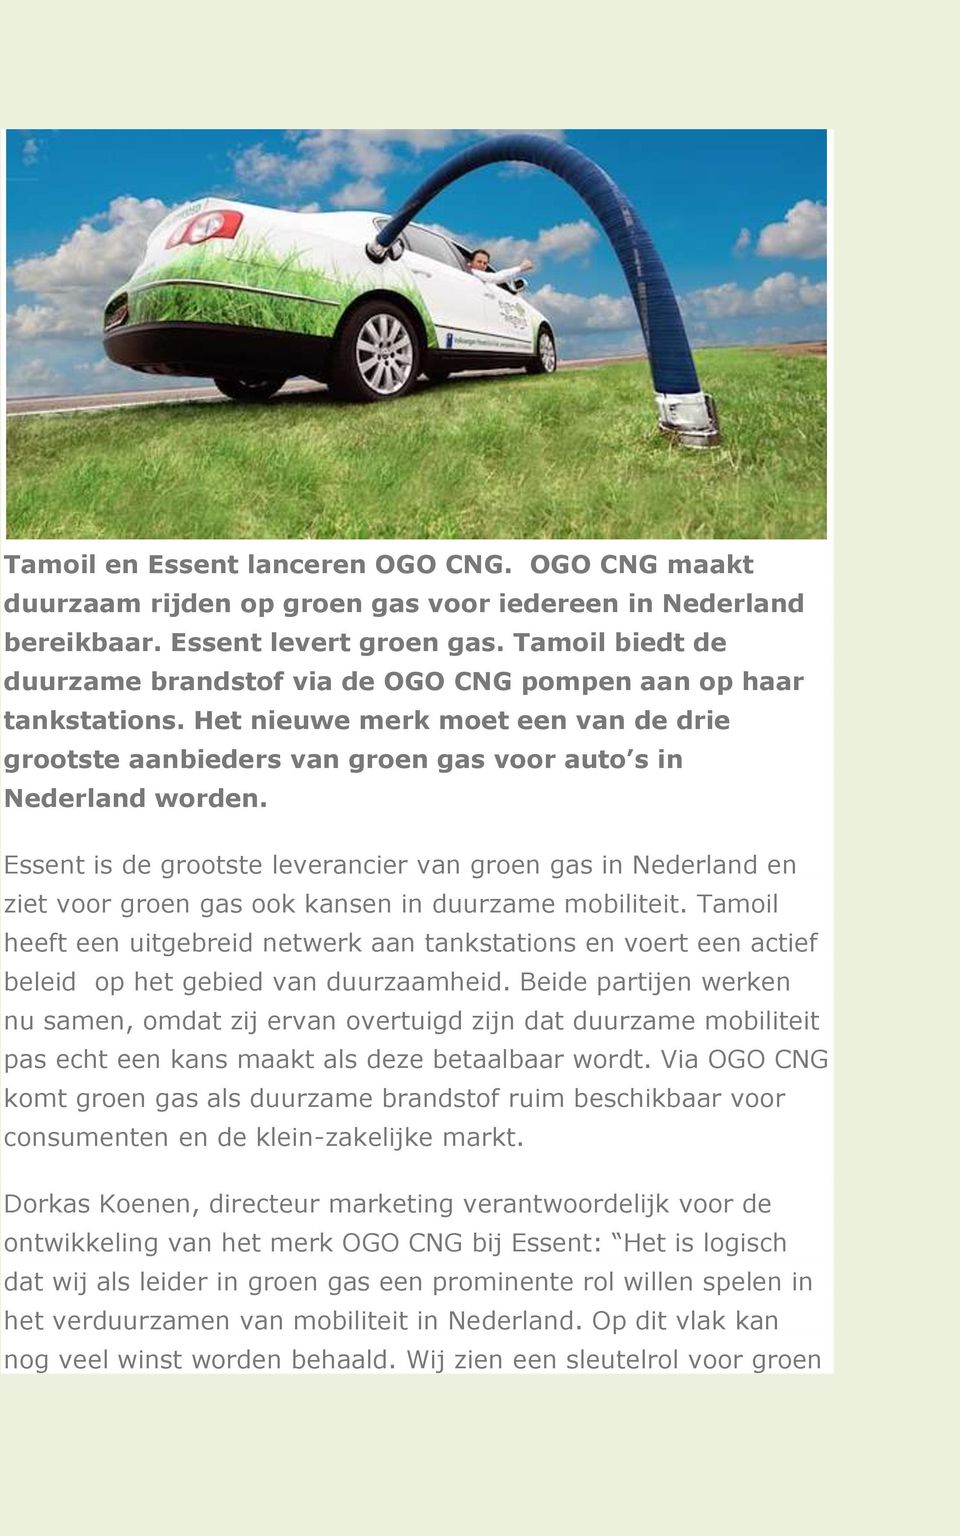 Essent is de grootste leverancier van groen gas in Nederland en ziet voor groen gas ook kansen in duurzame mobiliteit.